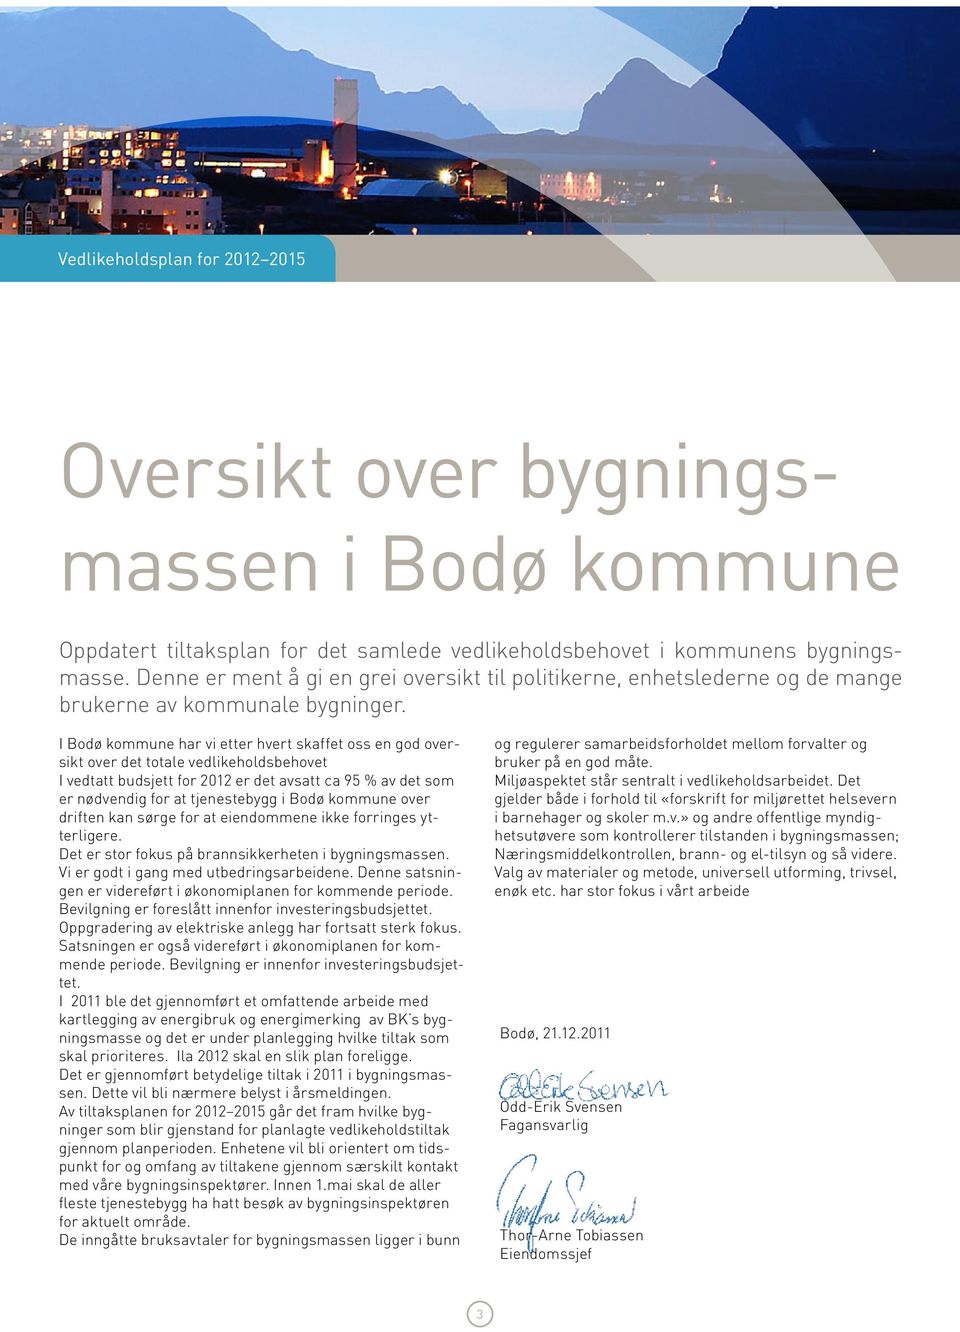 I Bodø kommune har vi etter hvert skaffet oss en god oversikt over det totale vedlikeholdsbehovet I vedtatt budsjett for 2012 er det avsatt ca 95 % av det som er nødvendig for at tjenestebygg i Bodø